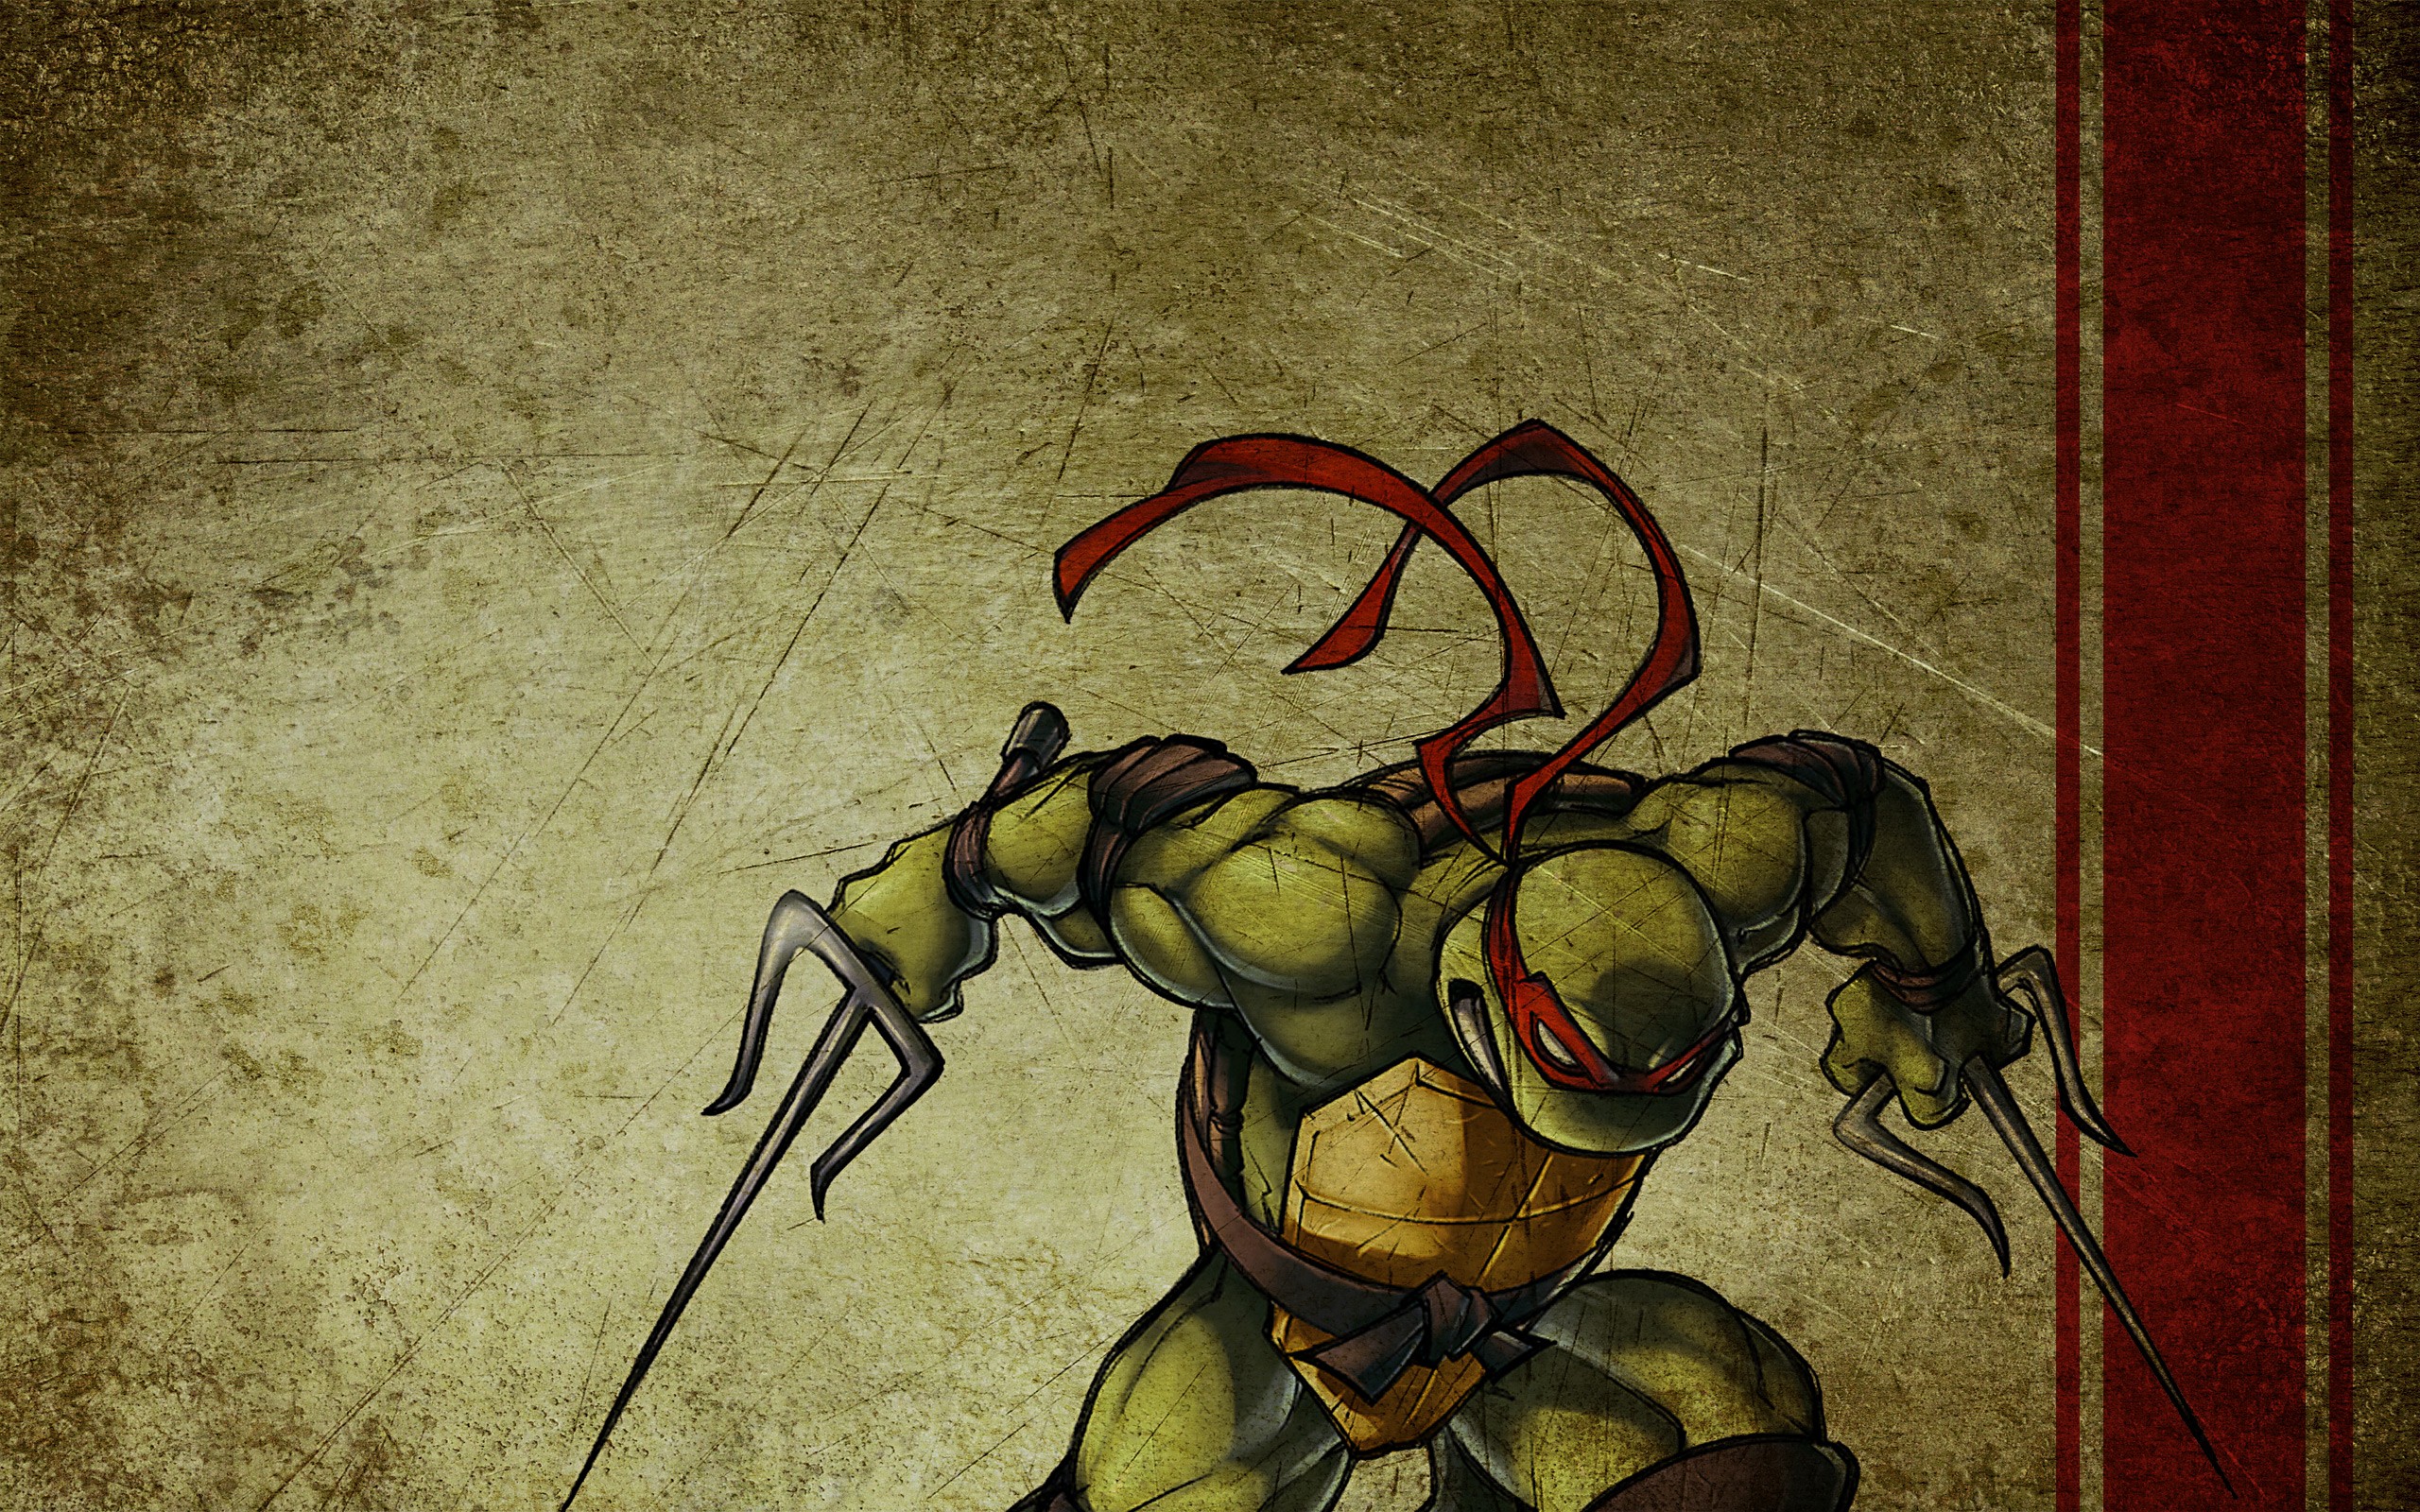 General 2560x1600 Teenage Mutant Ninja Turtles warrior artwork Raphael (TMNT) digital art